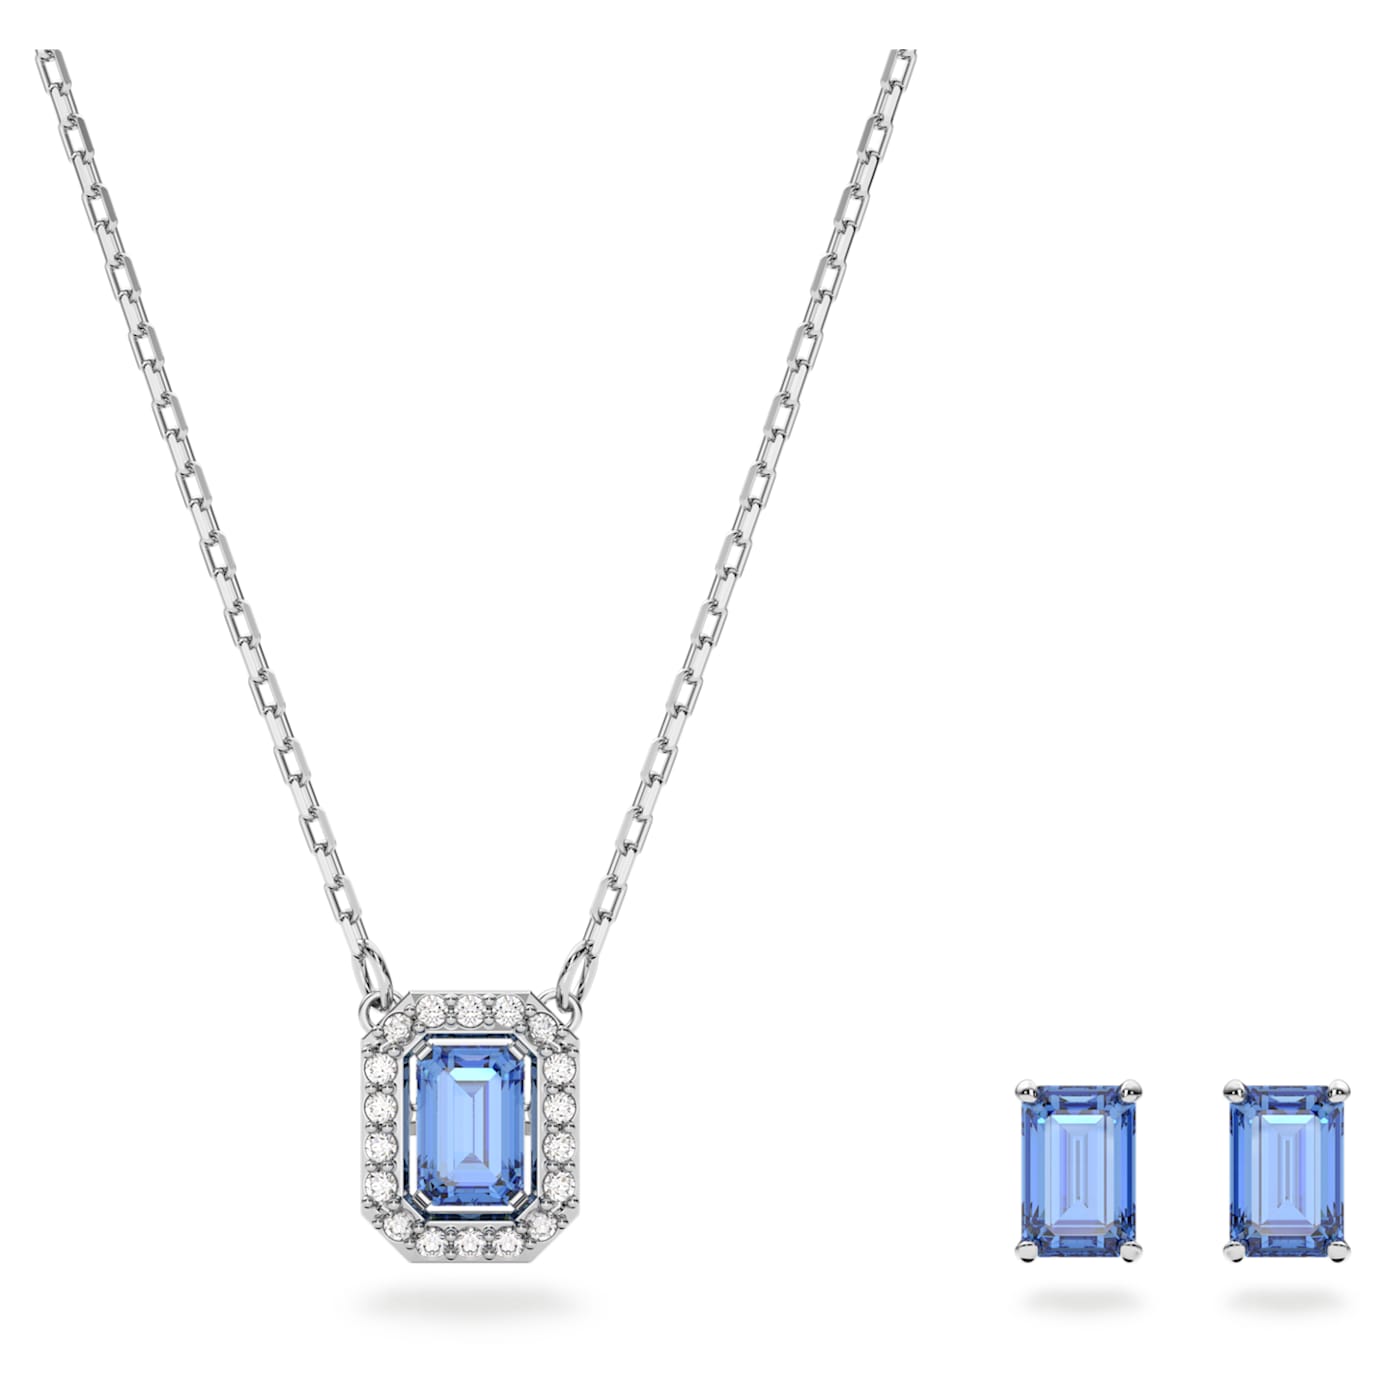 Swarovski Očarujúca sada šperkov s kryštálmi Millenia 5641171 (náušnice, náhrdelník)